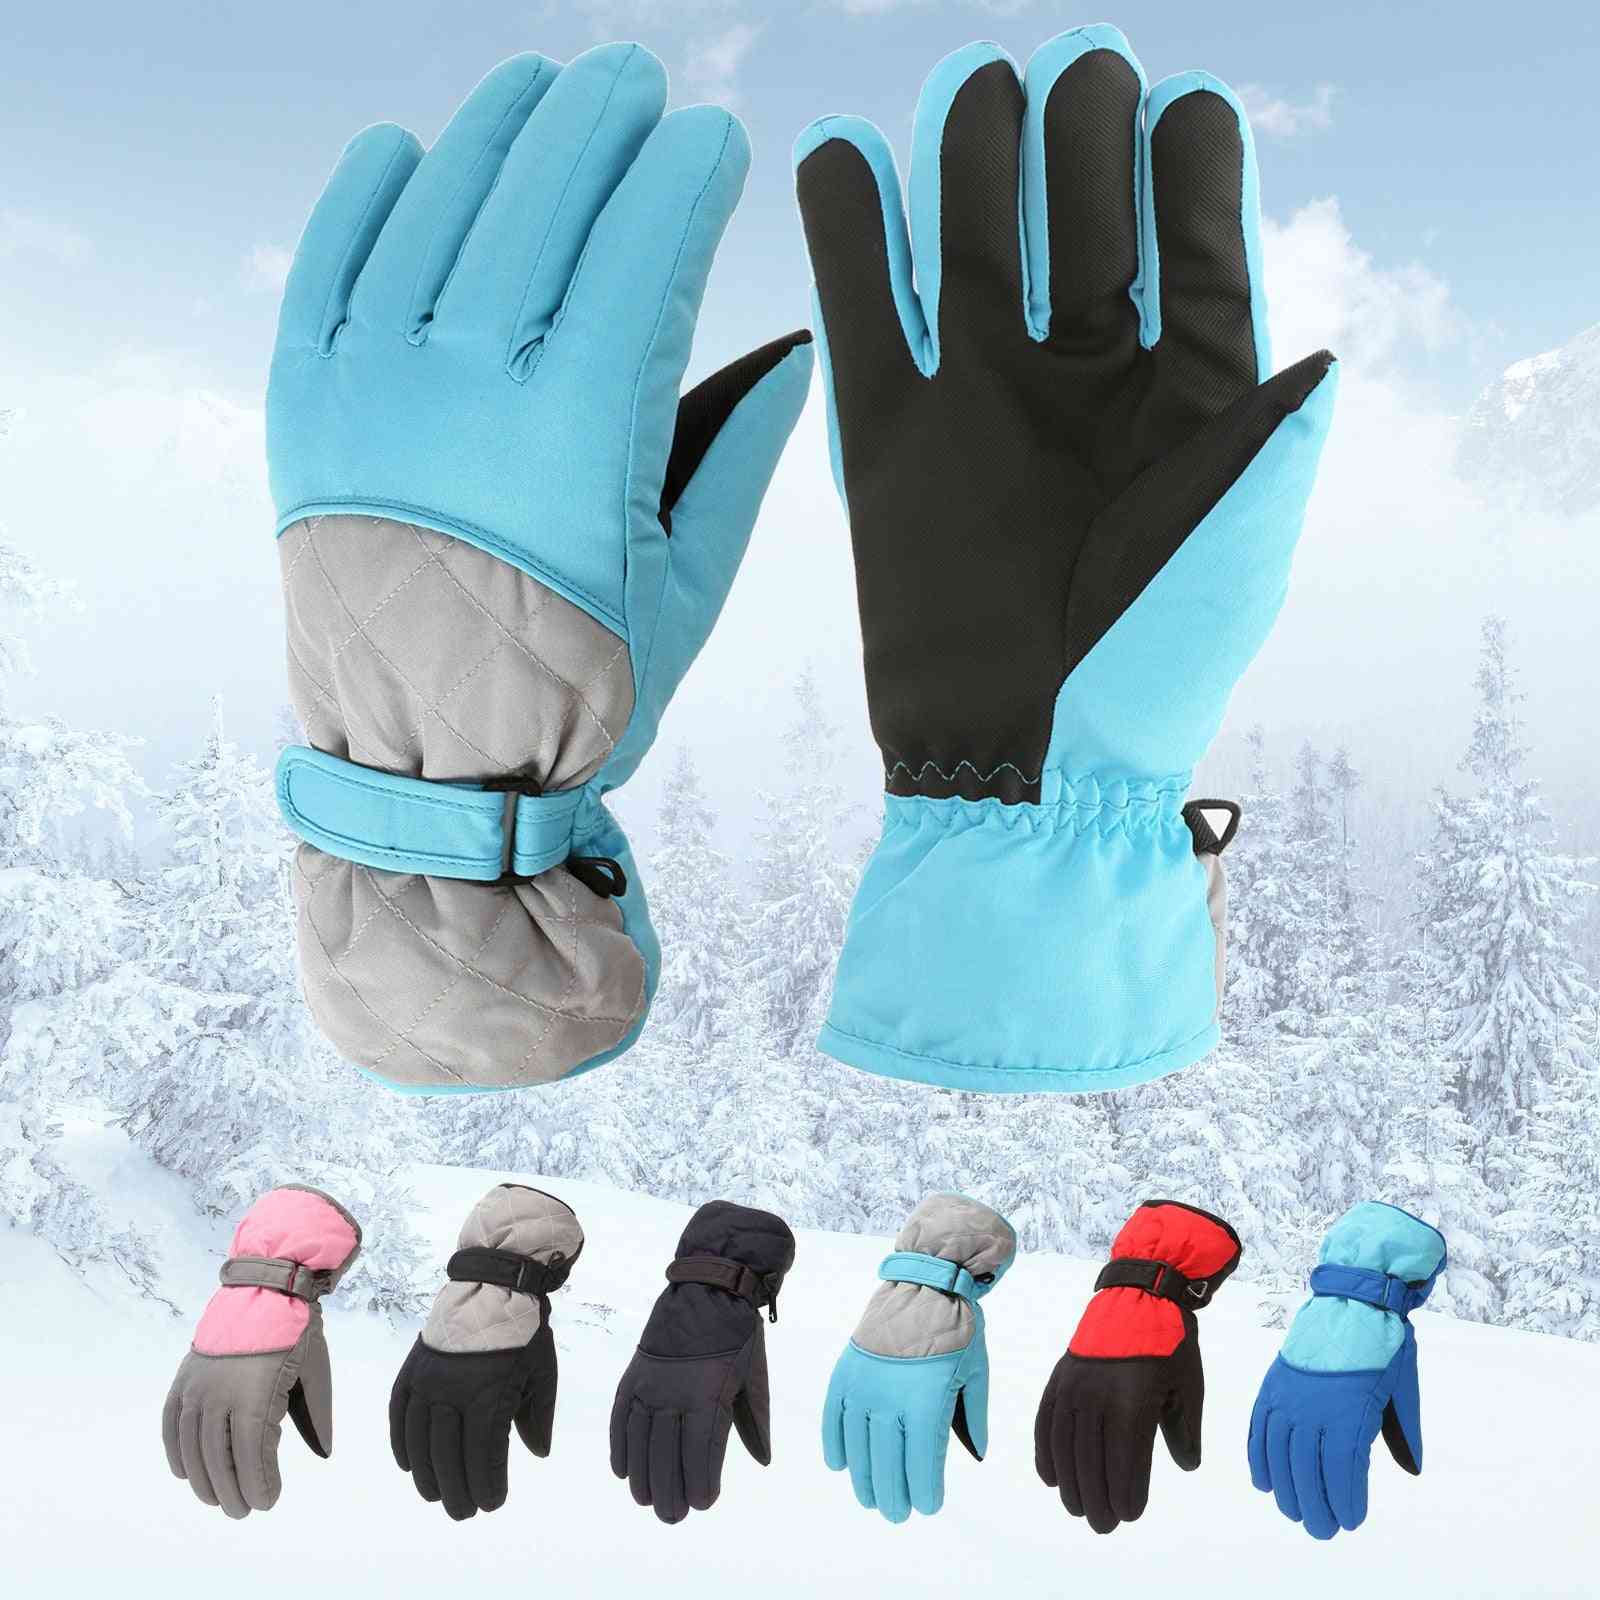 Winter Warm- Snowboard Ski Mittens, Wrist Warmer, Snow Gloves